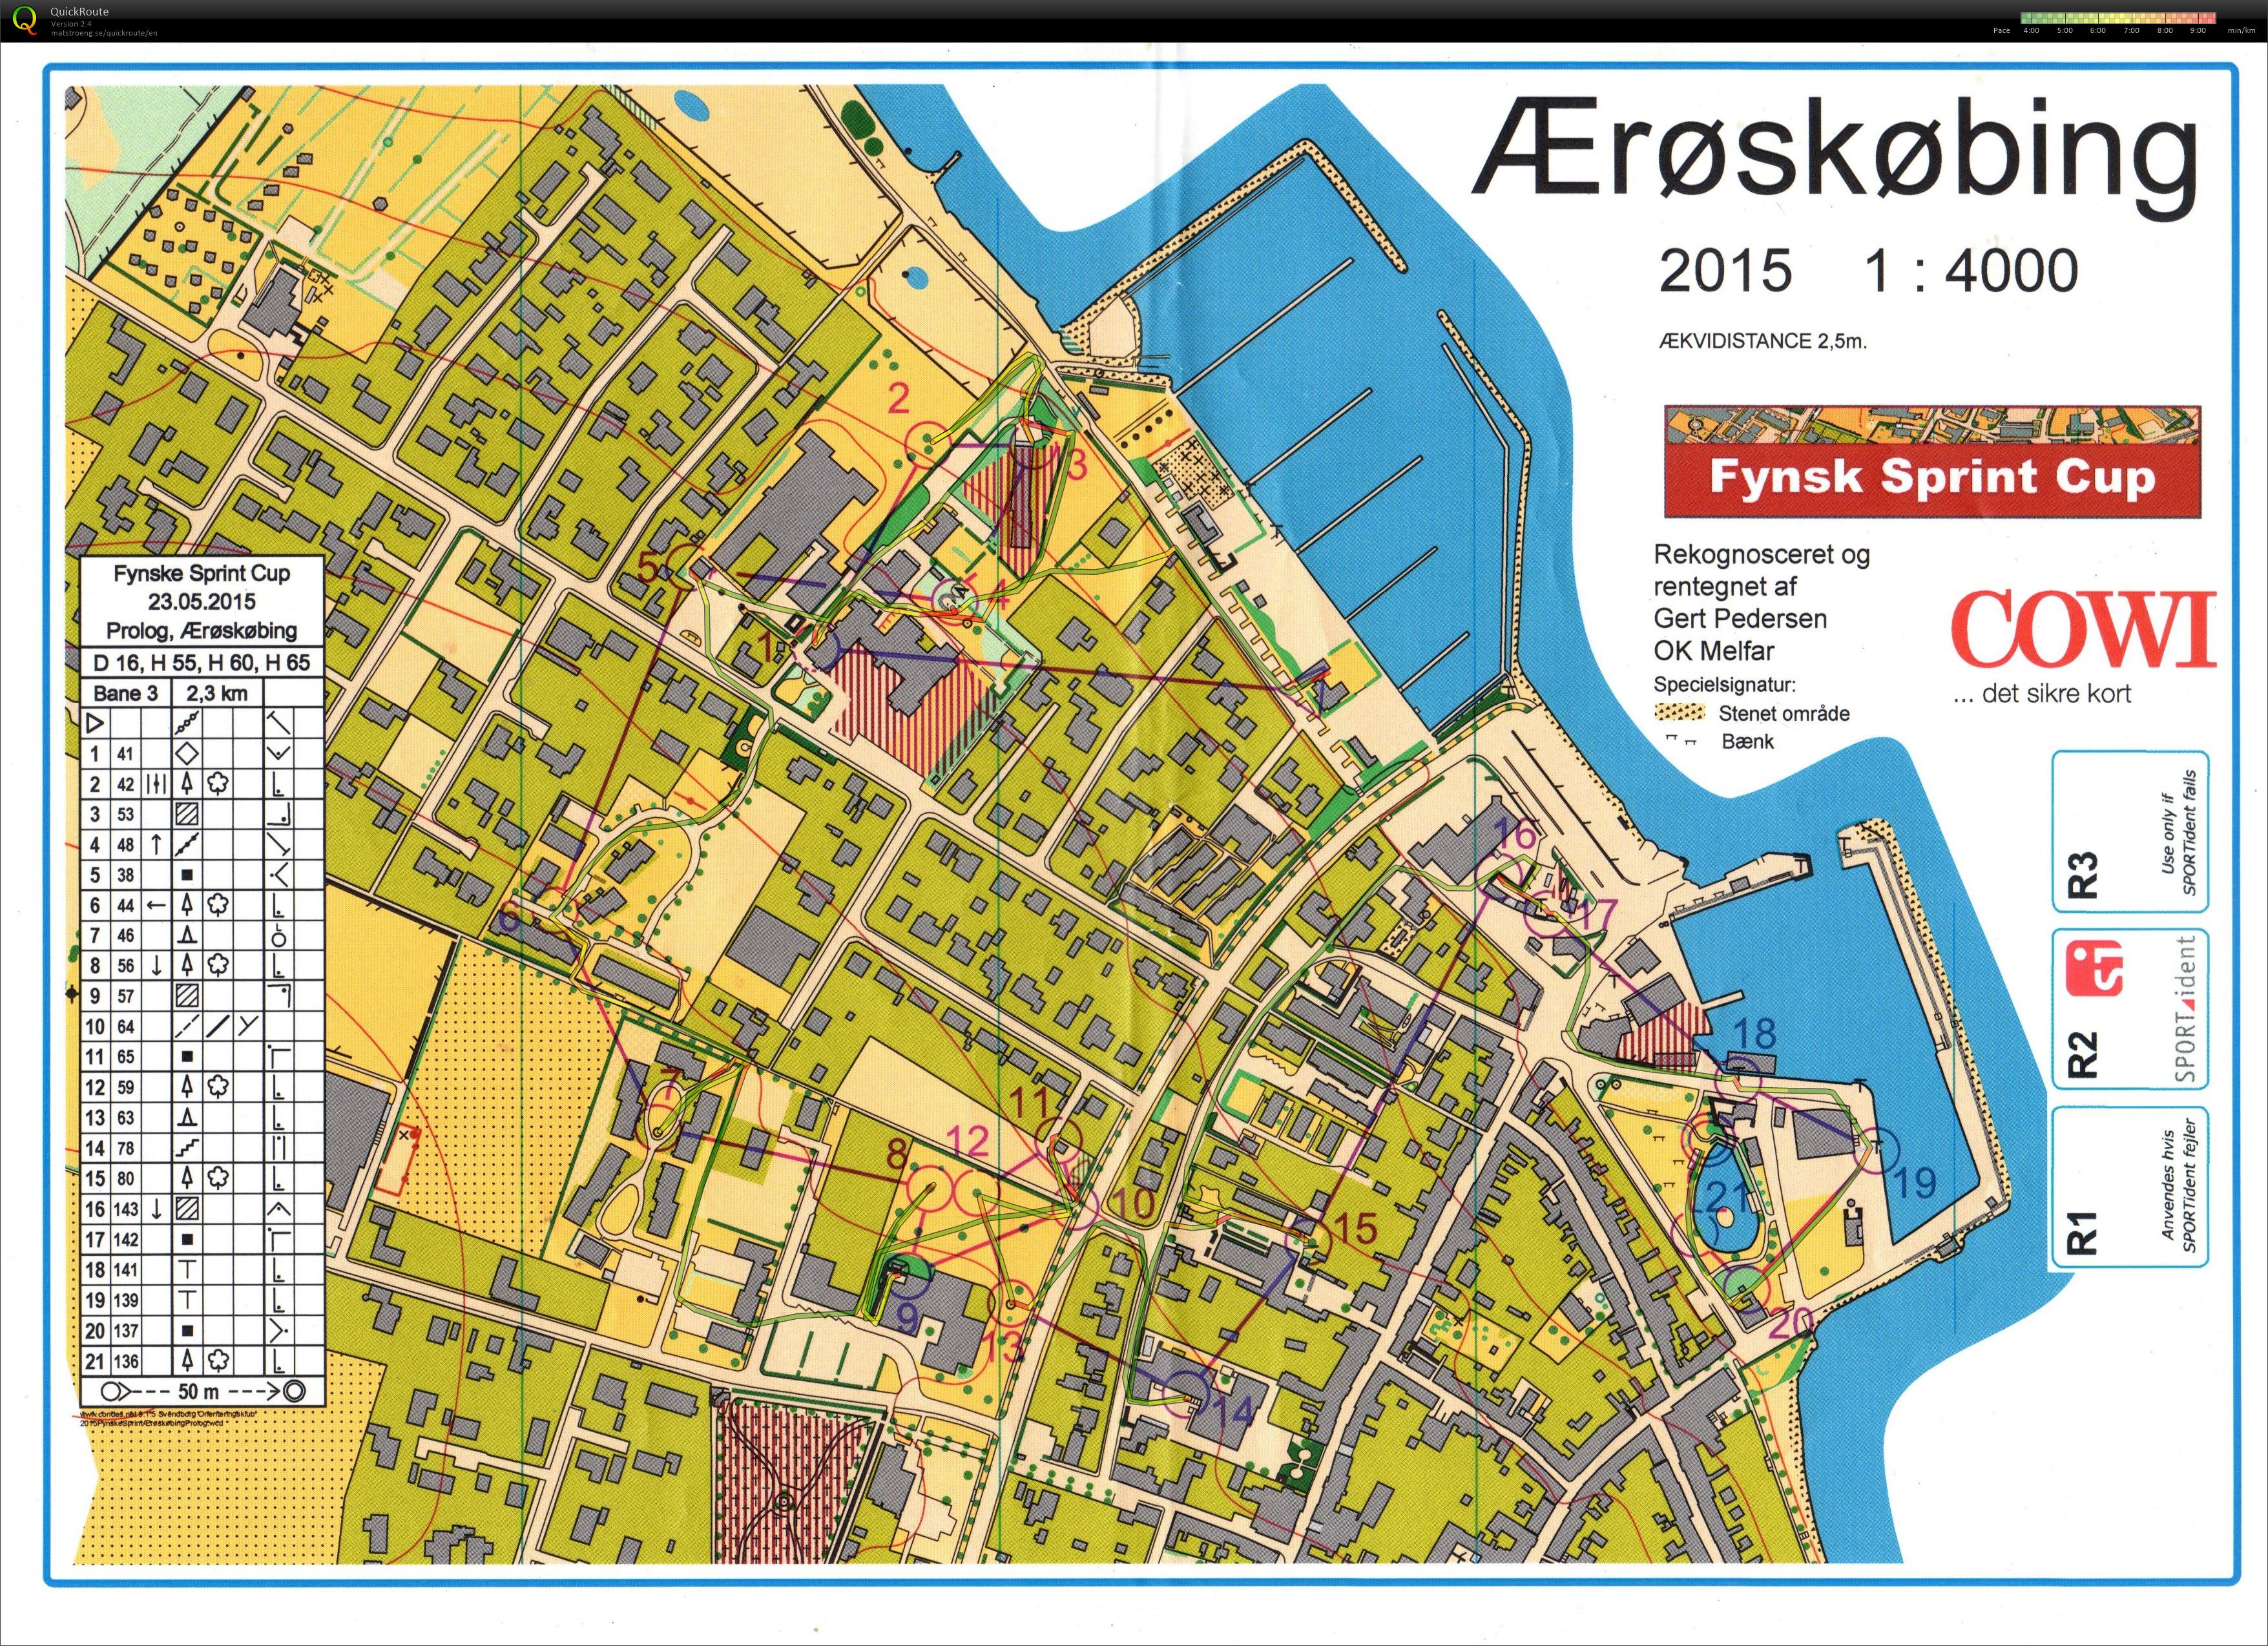 Fynsk Sprint Cup - prolog1 (23-05-2015)